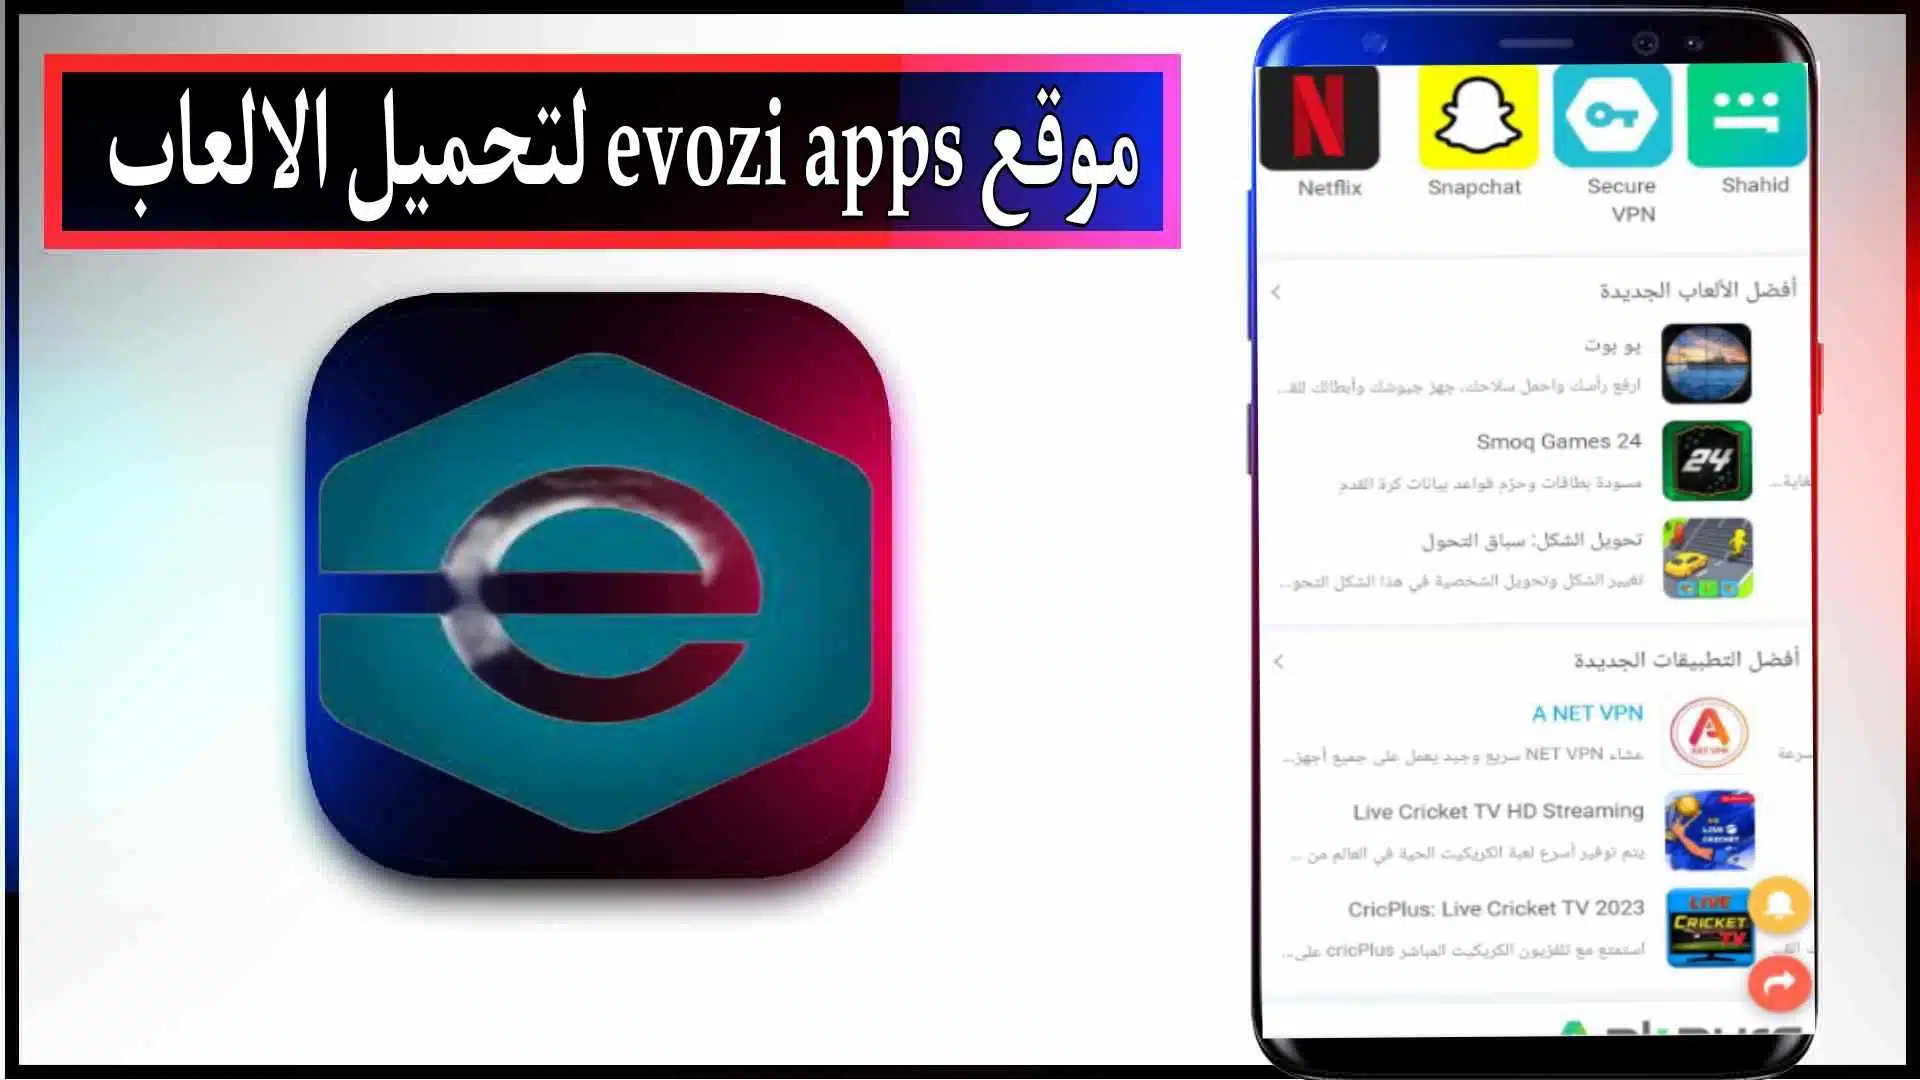 موقع evozi apps لتحميل تطبيقات والعاب مهكرة 2023 للاندرويد والايفون